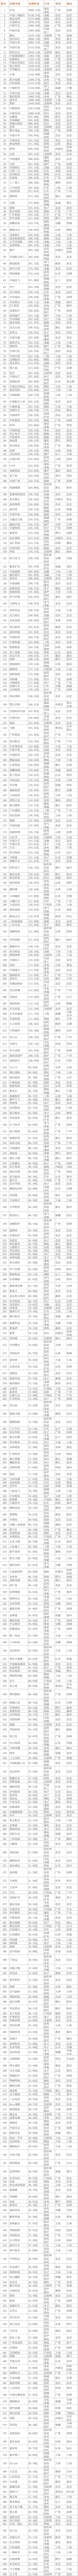 2021年中国500强排行榜_2021亚洲品牌500强排行榜(中国企业名单)